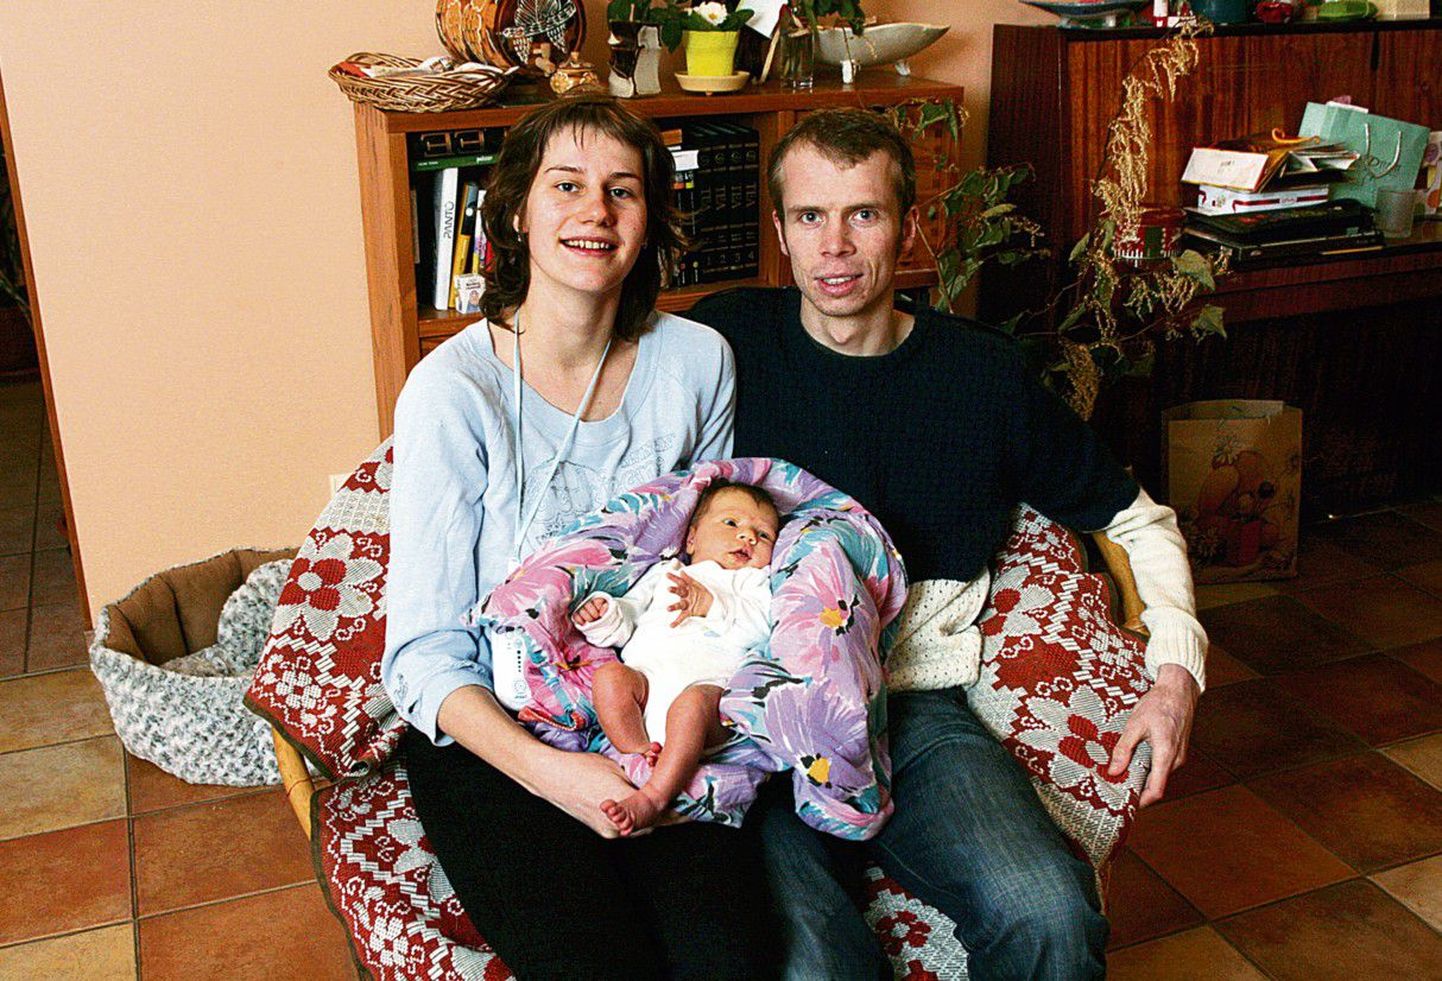 Veel üks loendatav: Eesti rahvaloendusel olulist rolli mängiv Belgiast pärit Koen Dossche ja tema elukaaslane Ave Leidmaa oma poole kuu 
vanuse tütrega.